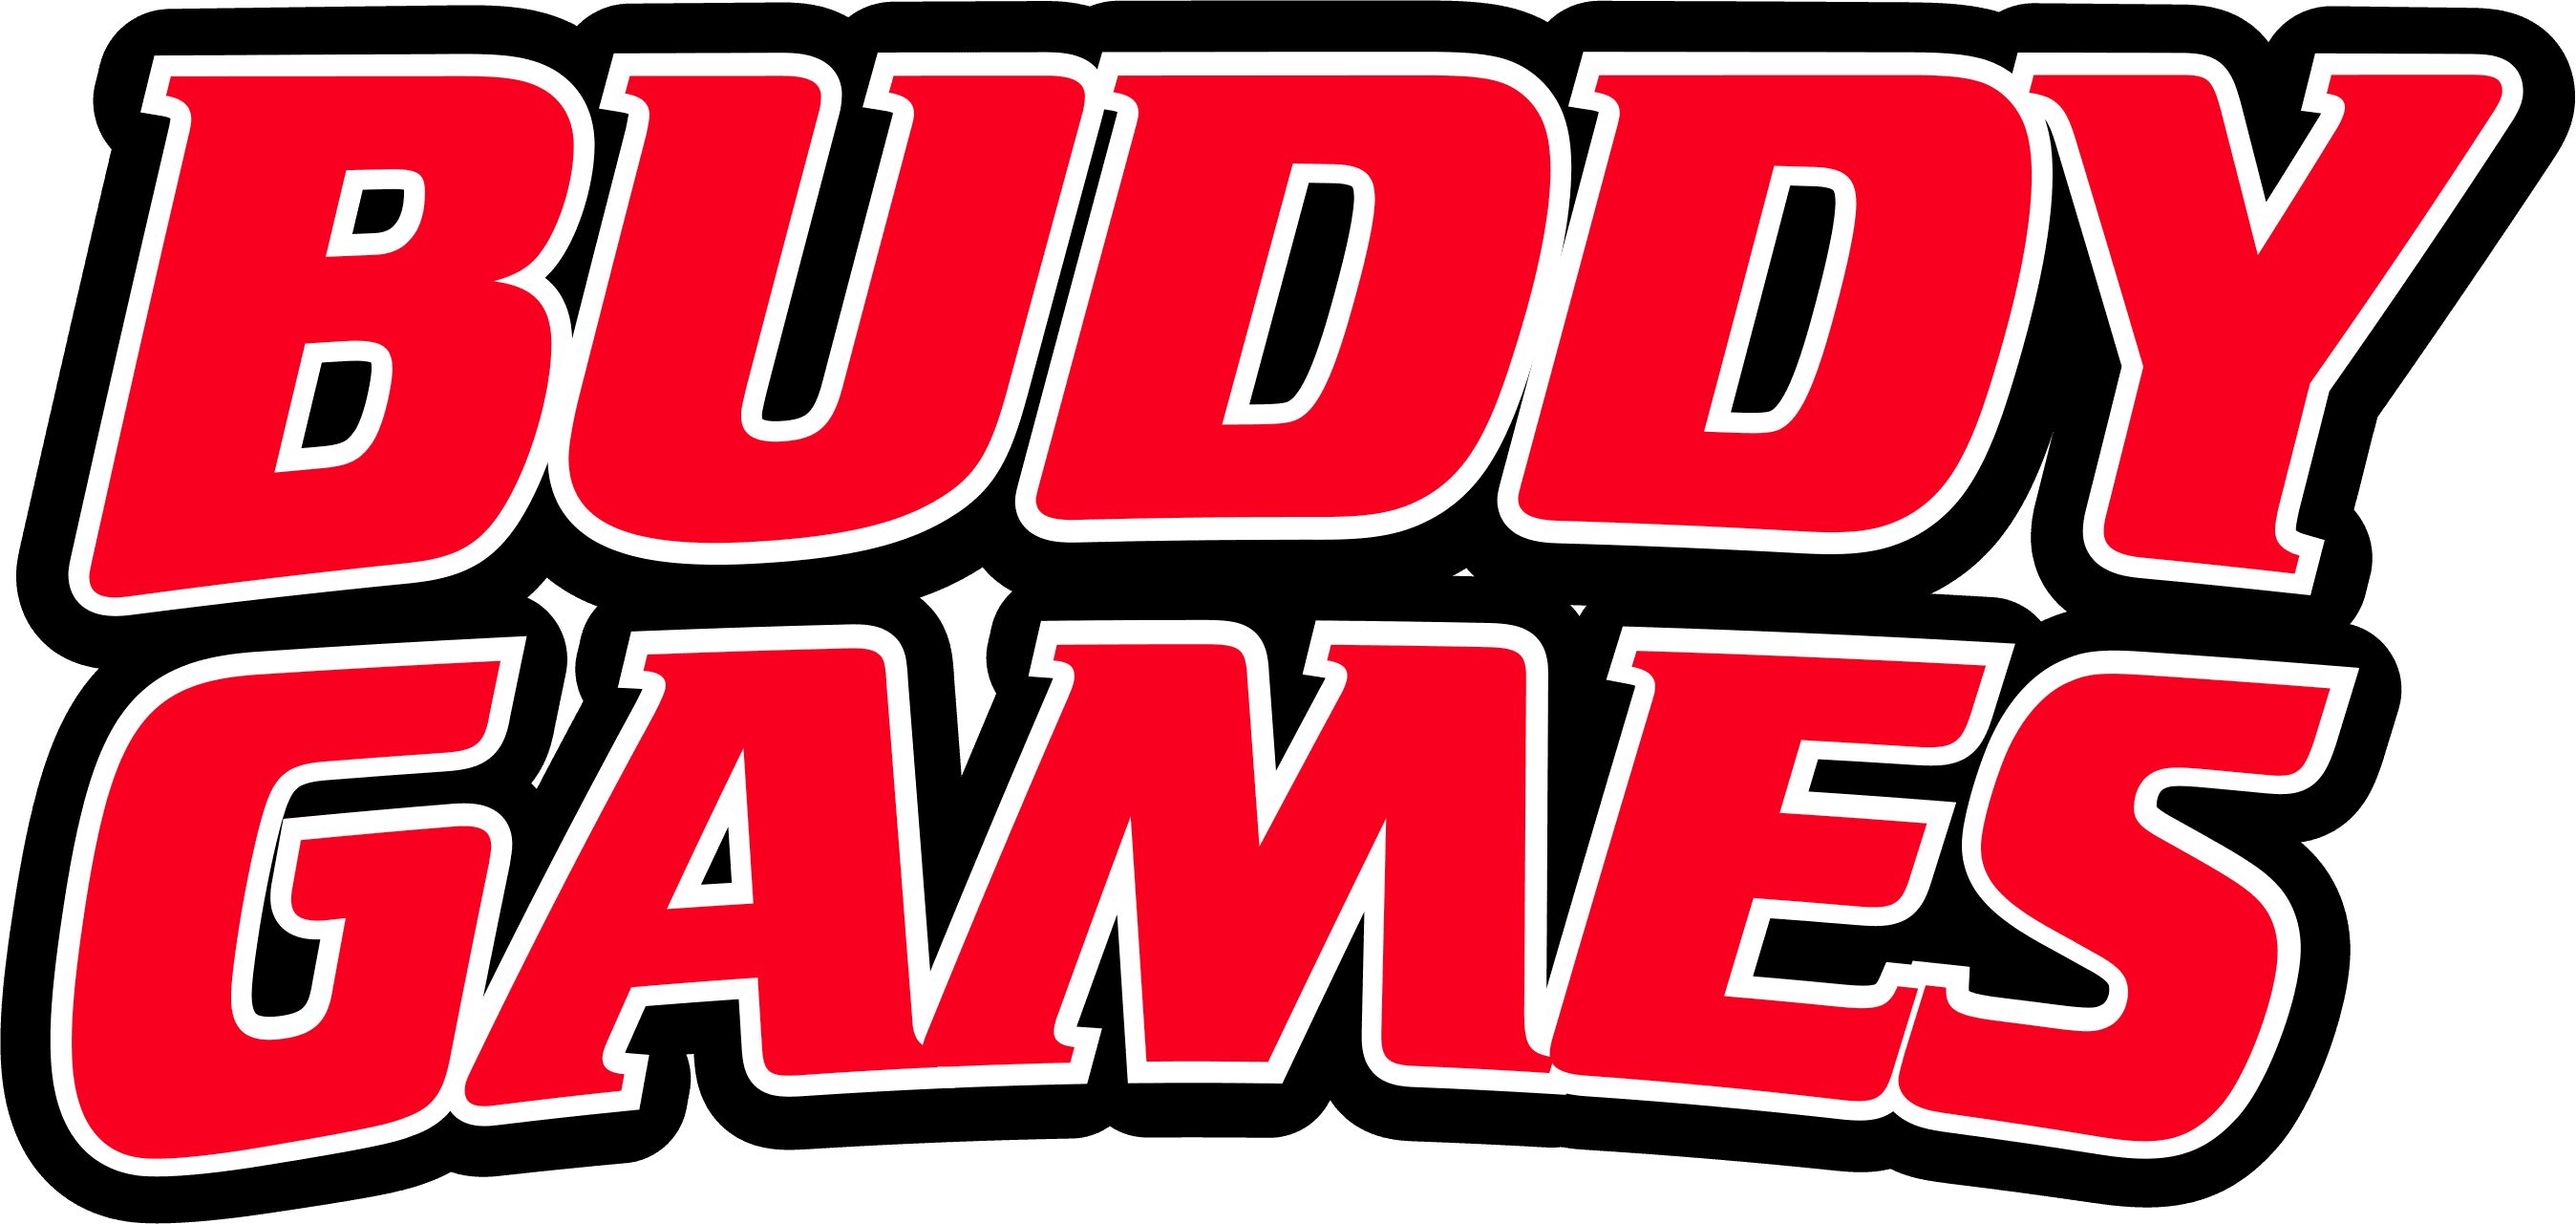 Buddy Games logo